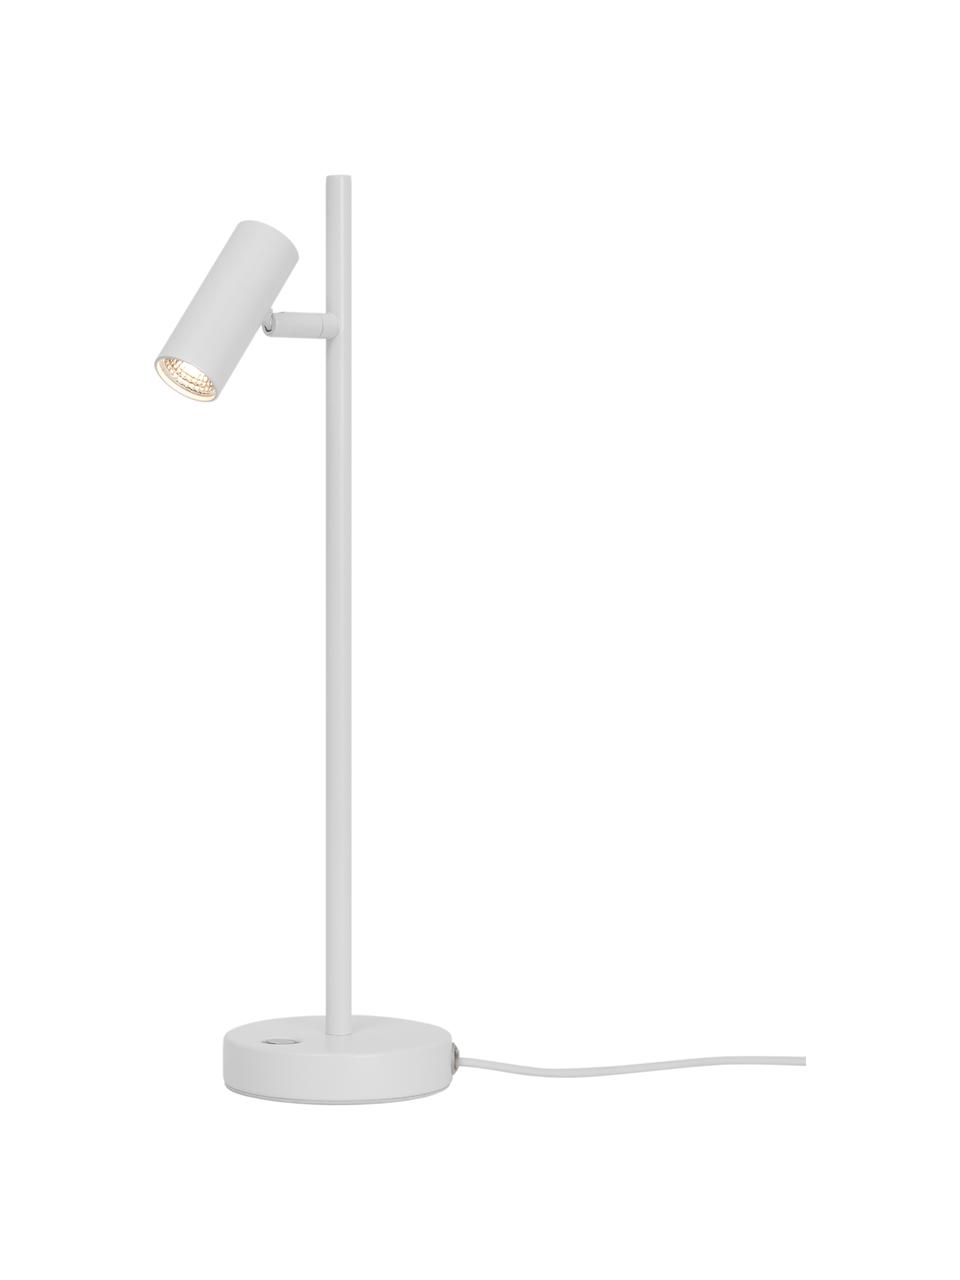 Lampa biurkowa LED z funkcją przyciemniania Omari, Biały, S 10 x W 40 cm